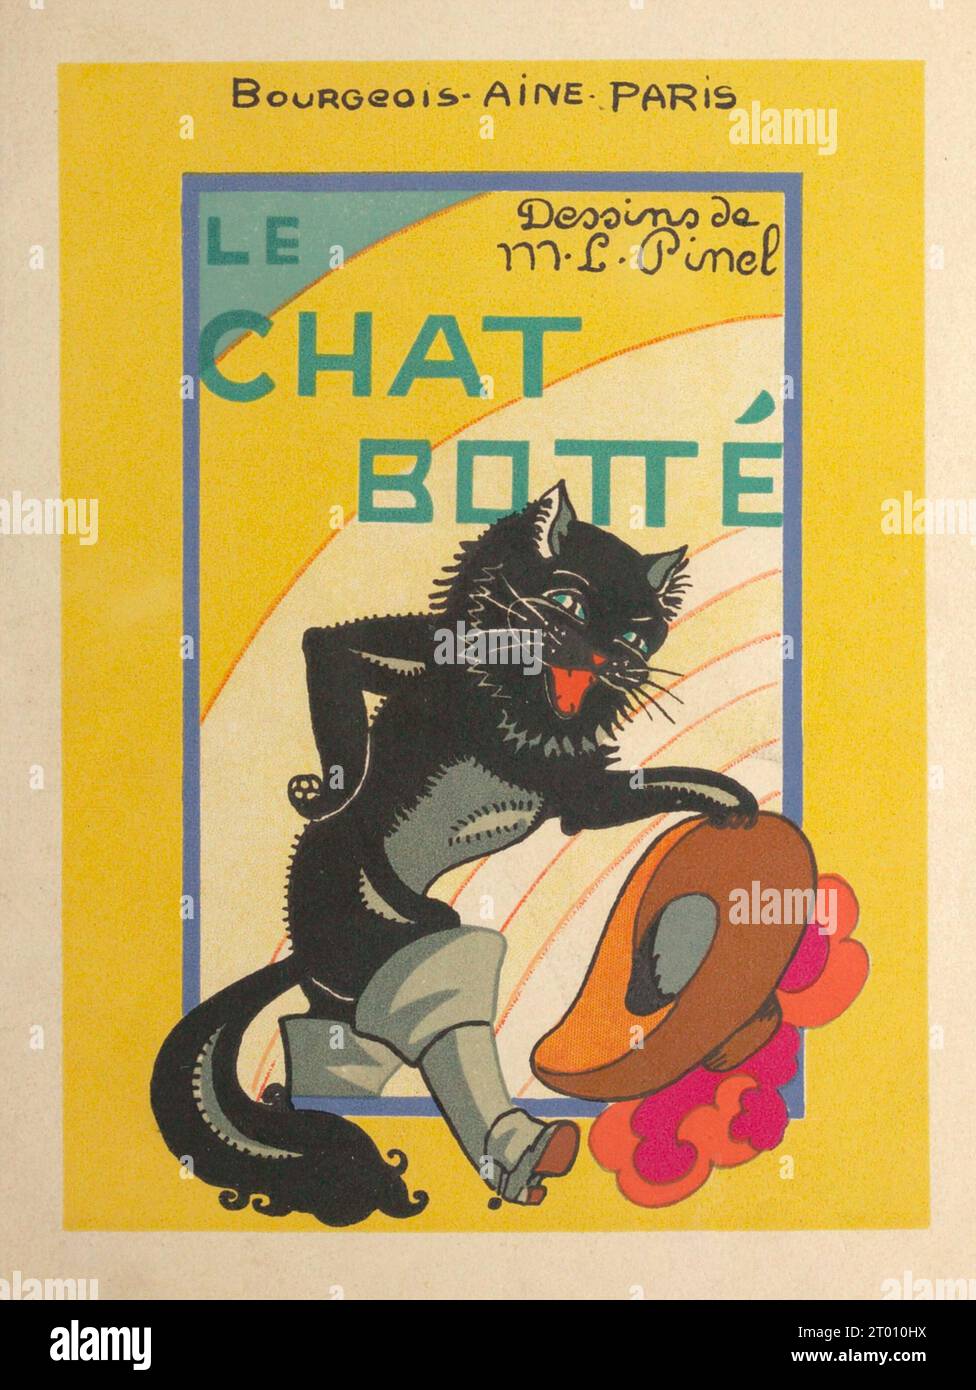 Copertina del libro "le chat botté" di Marie-Louise Pinel, pubblicato da Bourgeois Ainé nel 1890. Foto Stock